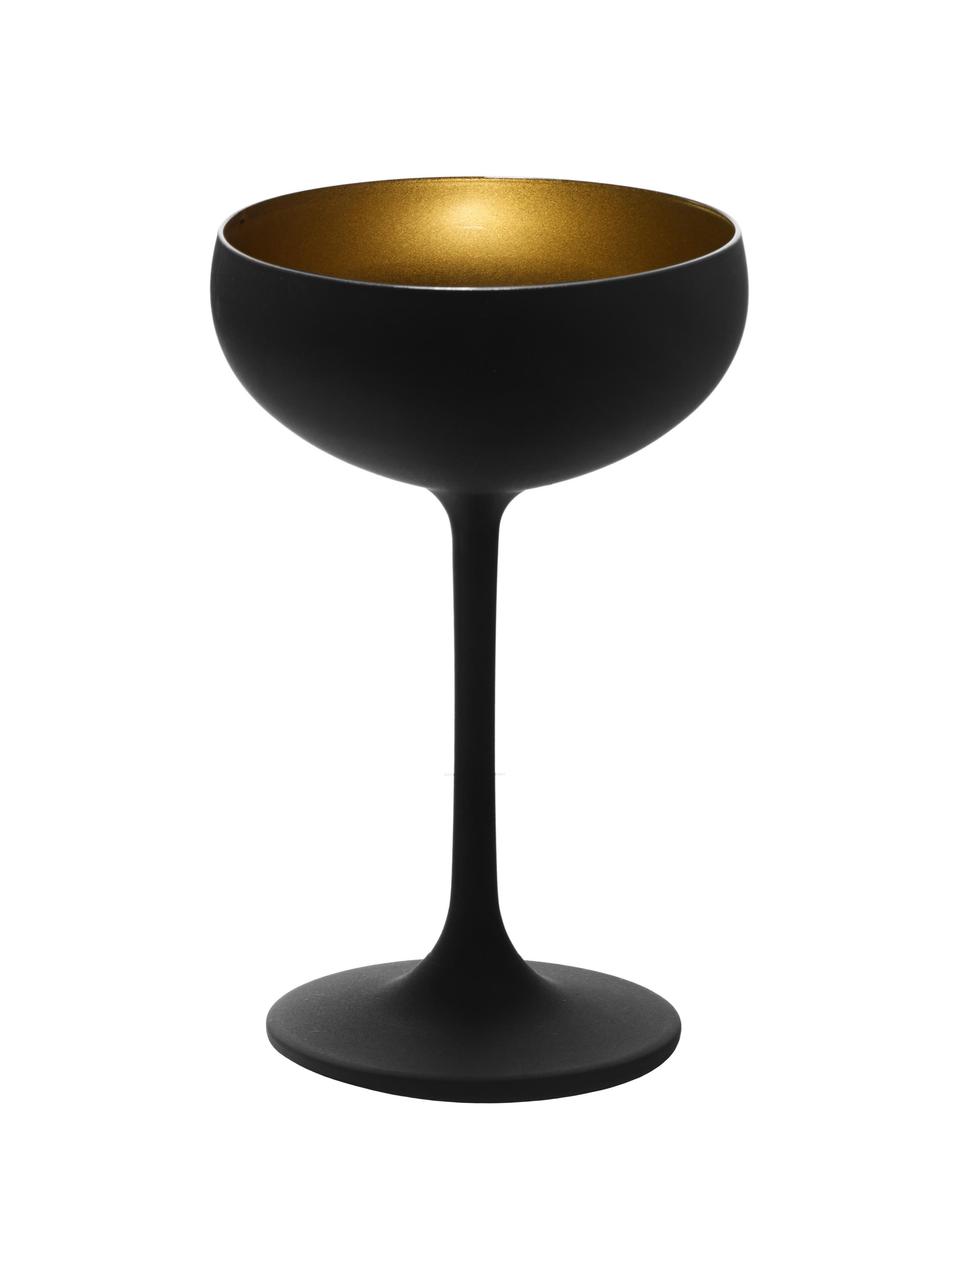 Kristallen champagneglazen Elements in zwart/goudkleurig, 6 stuks, Kristalglas, gecoat, Zwart, messingkleurig, Ø 10 x H 15 cm, 230 ml